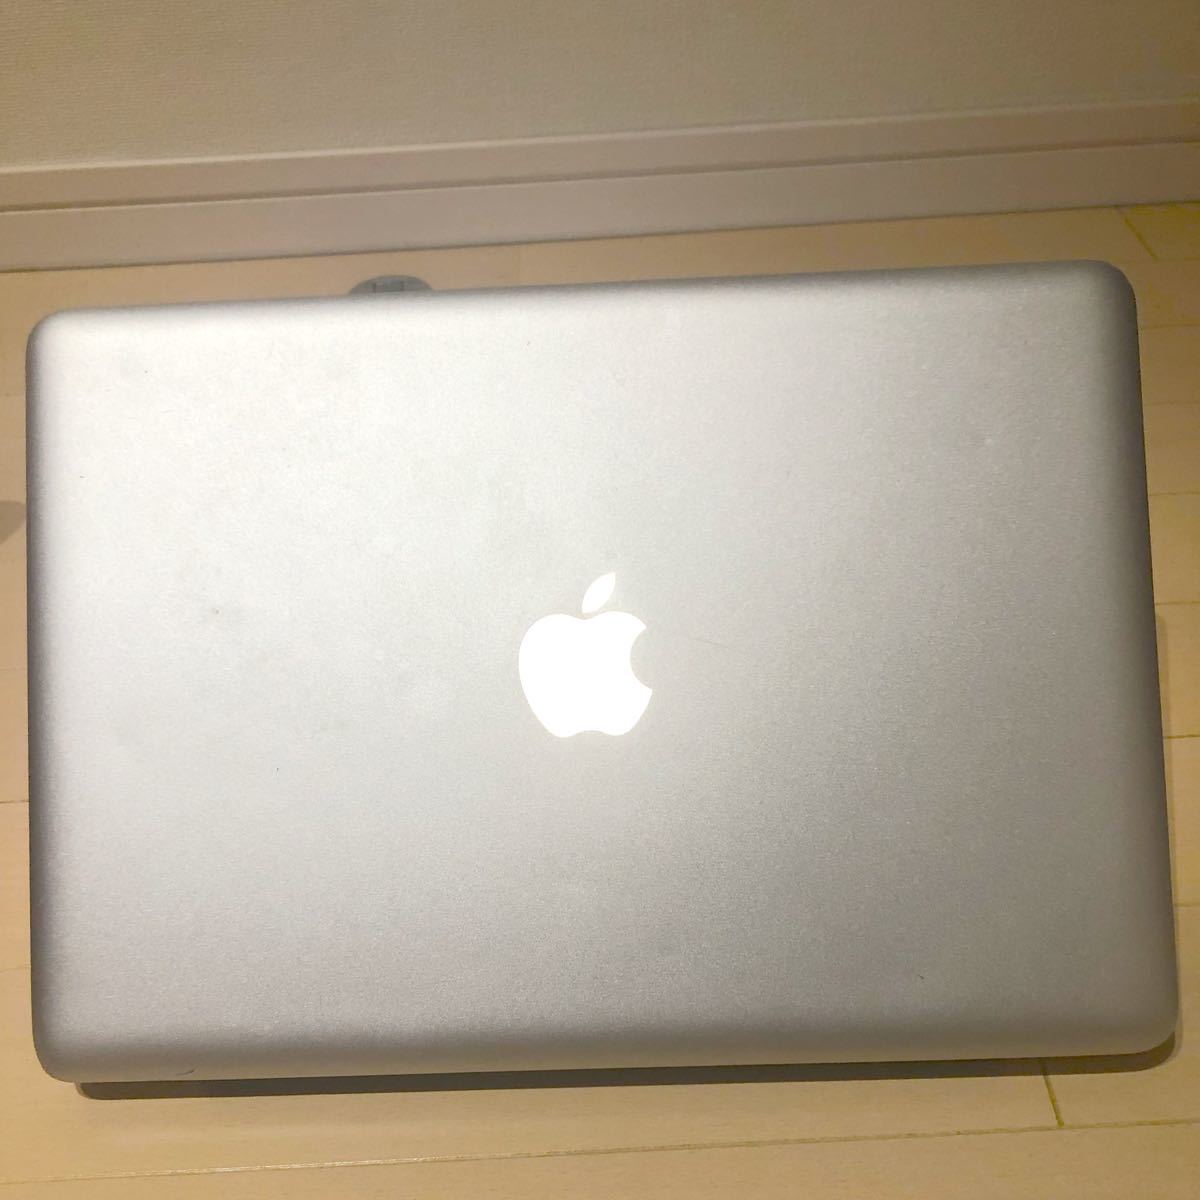 国内運費免費 MacBook Air2015 13inch Office導入済み ノートPC